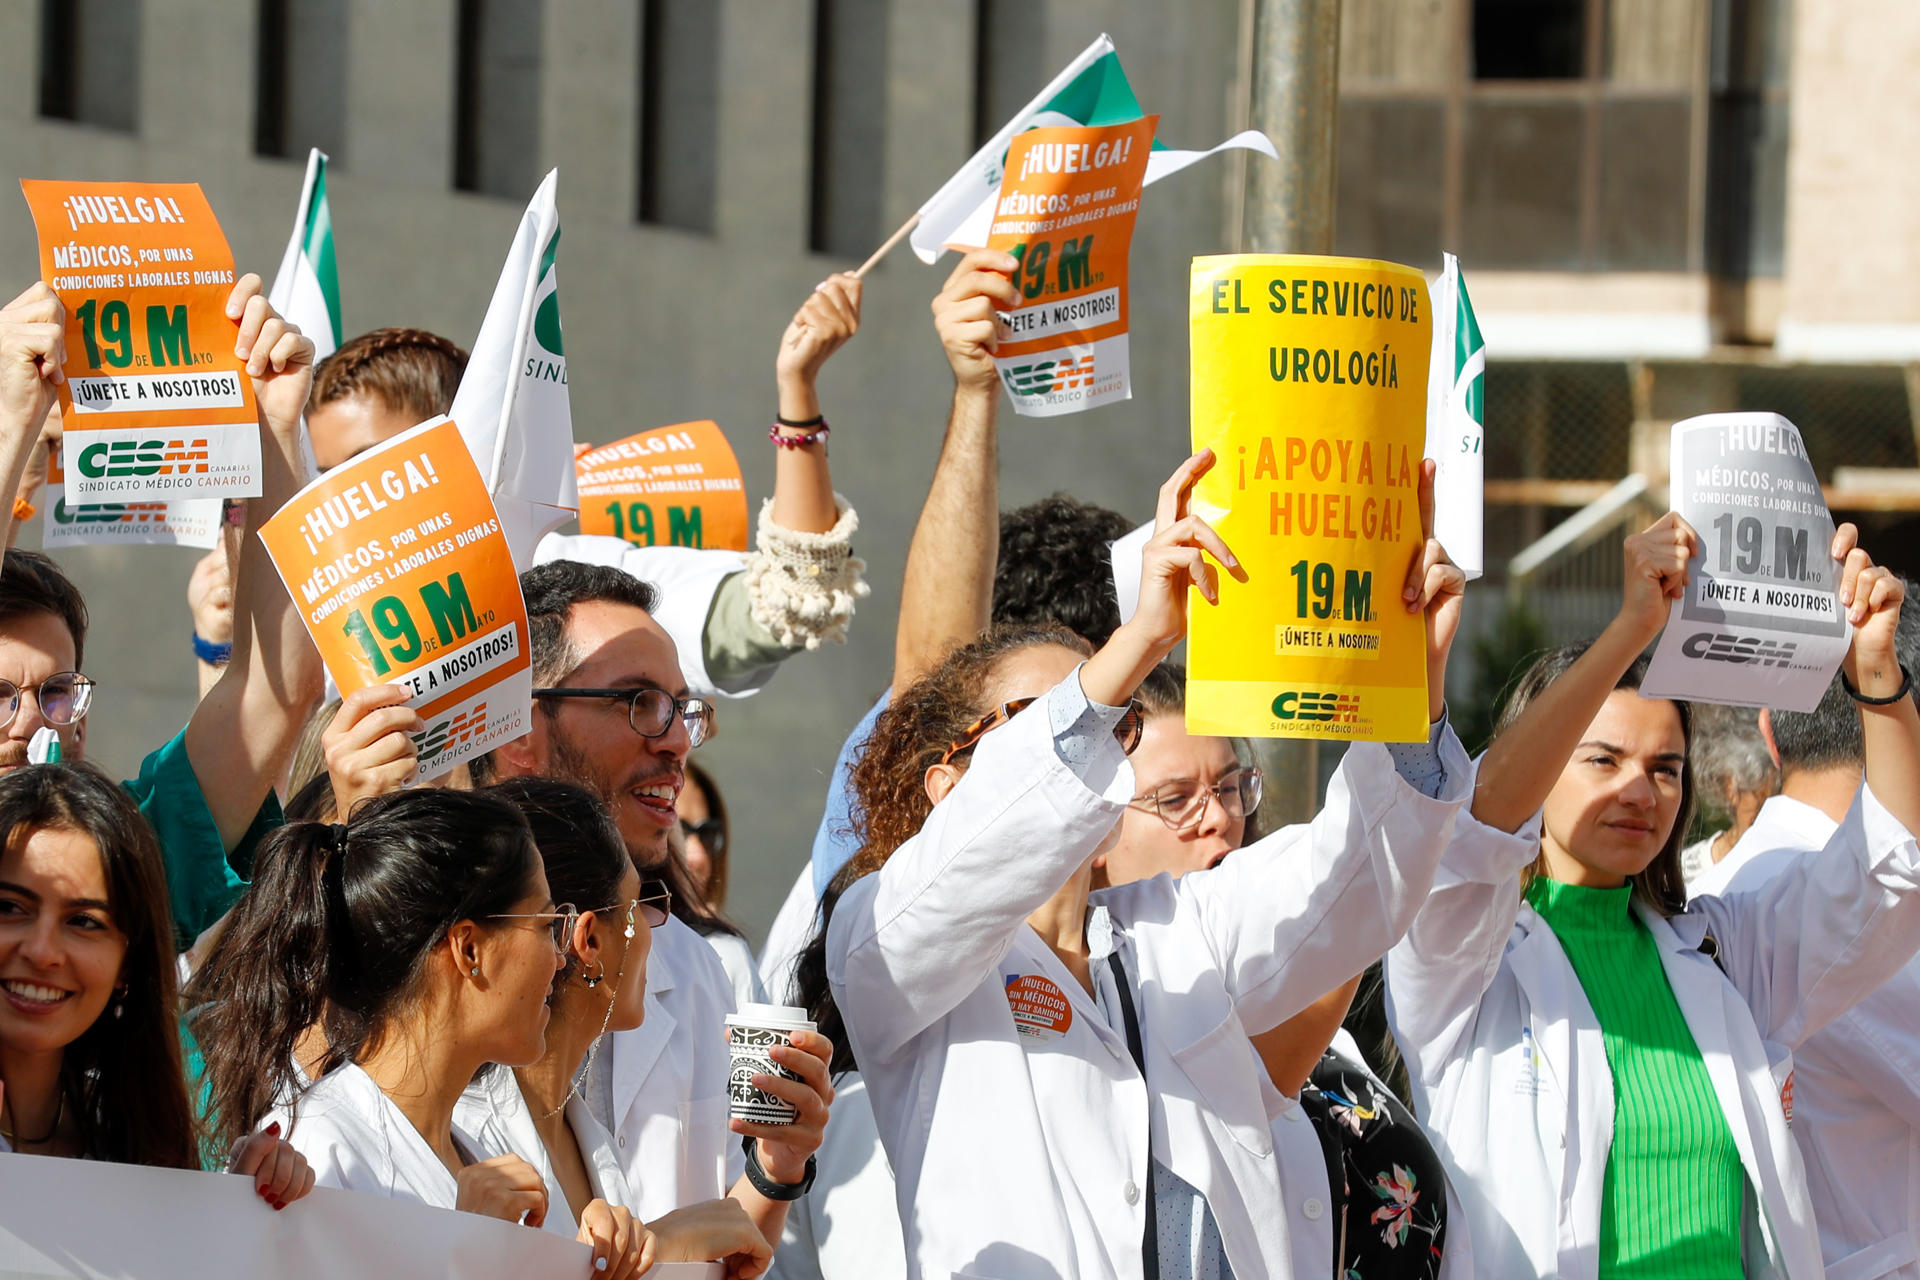 Foto tomada el viernes 19 de mayo, en la primera jornada de la huelga convocada por el Sindicato de Médicos de Canarias en la sanidad pública. EFE/ Elvira Urquijo A.